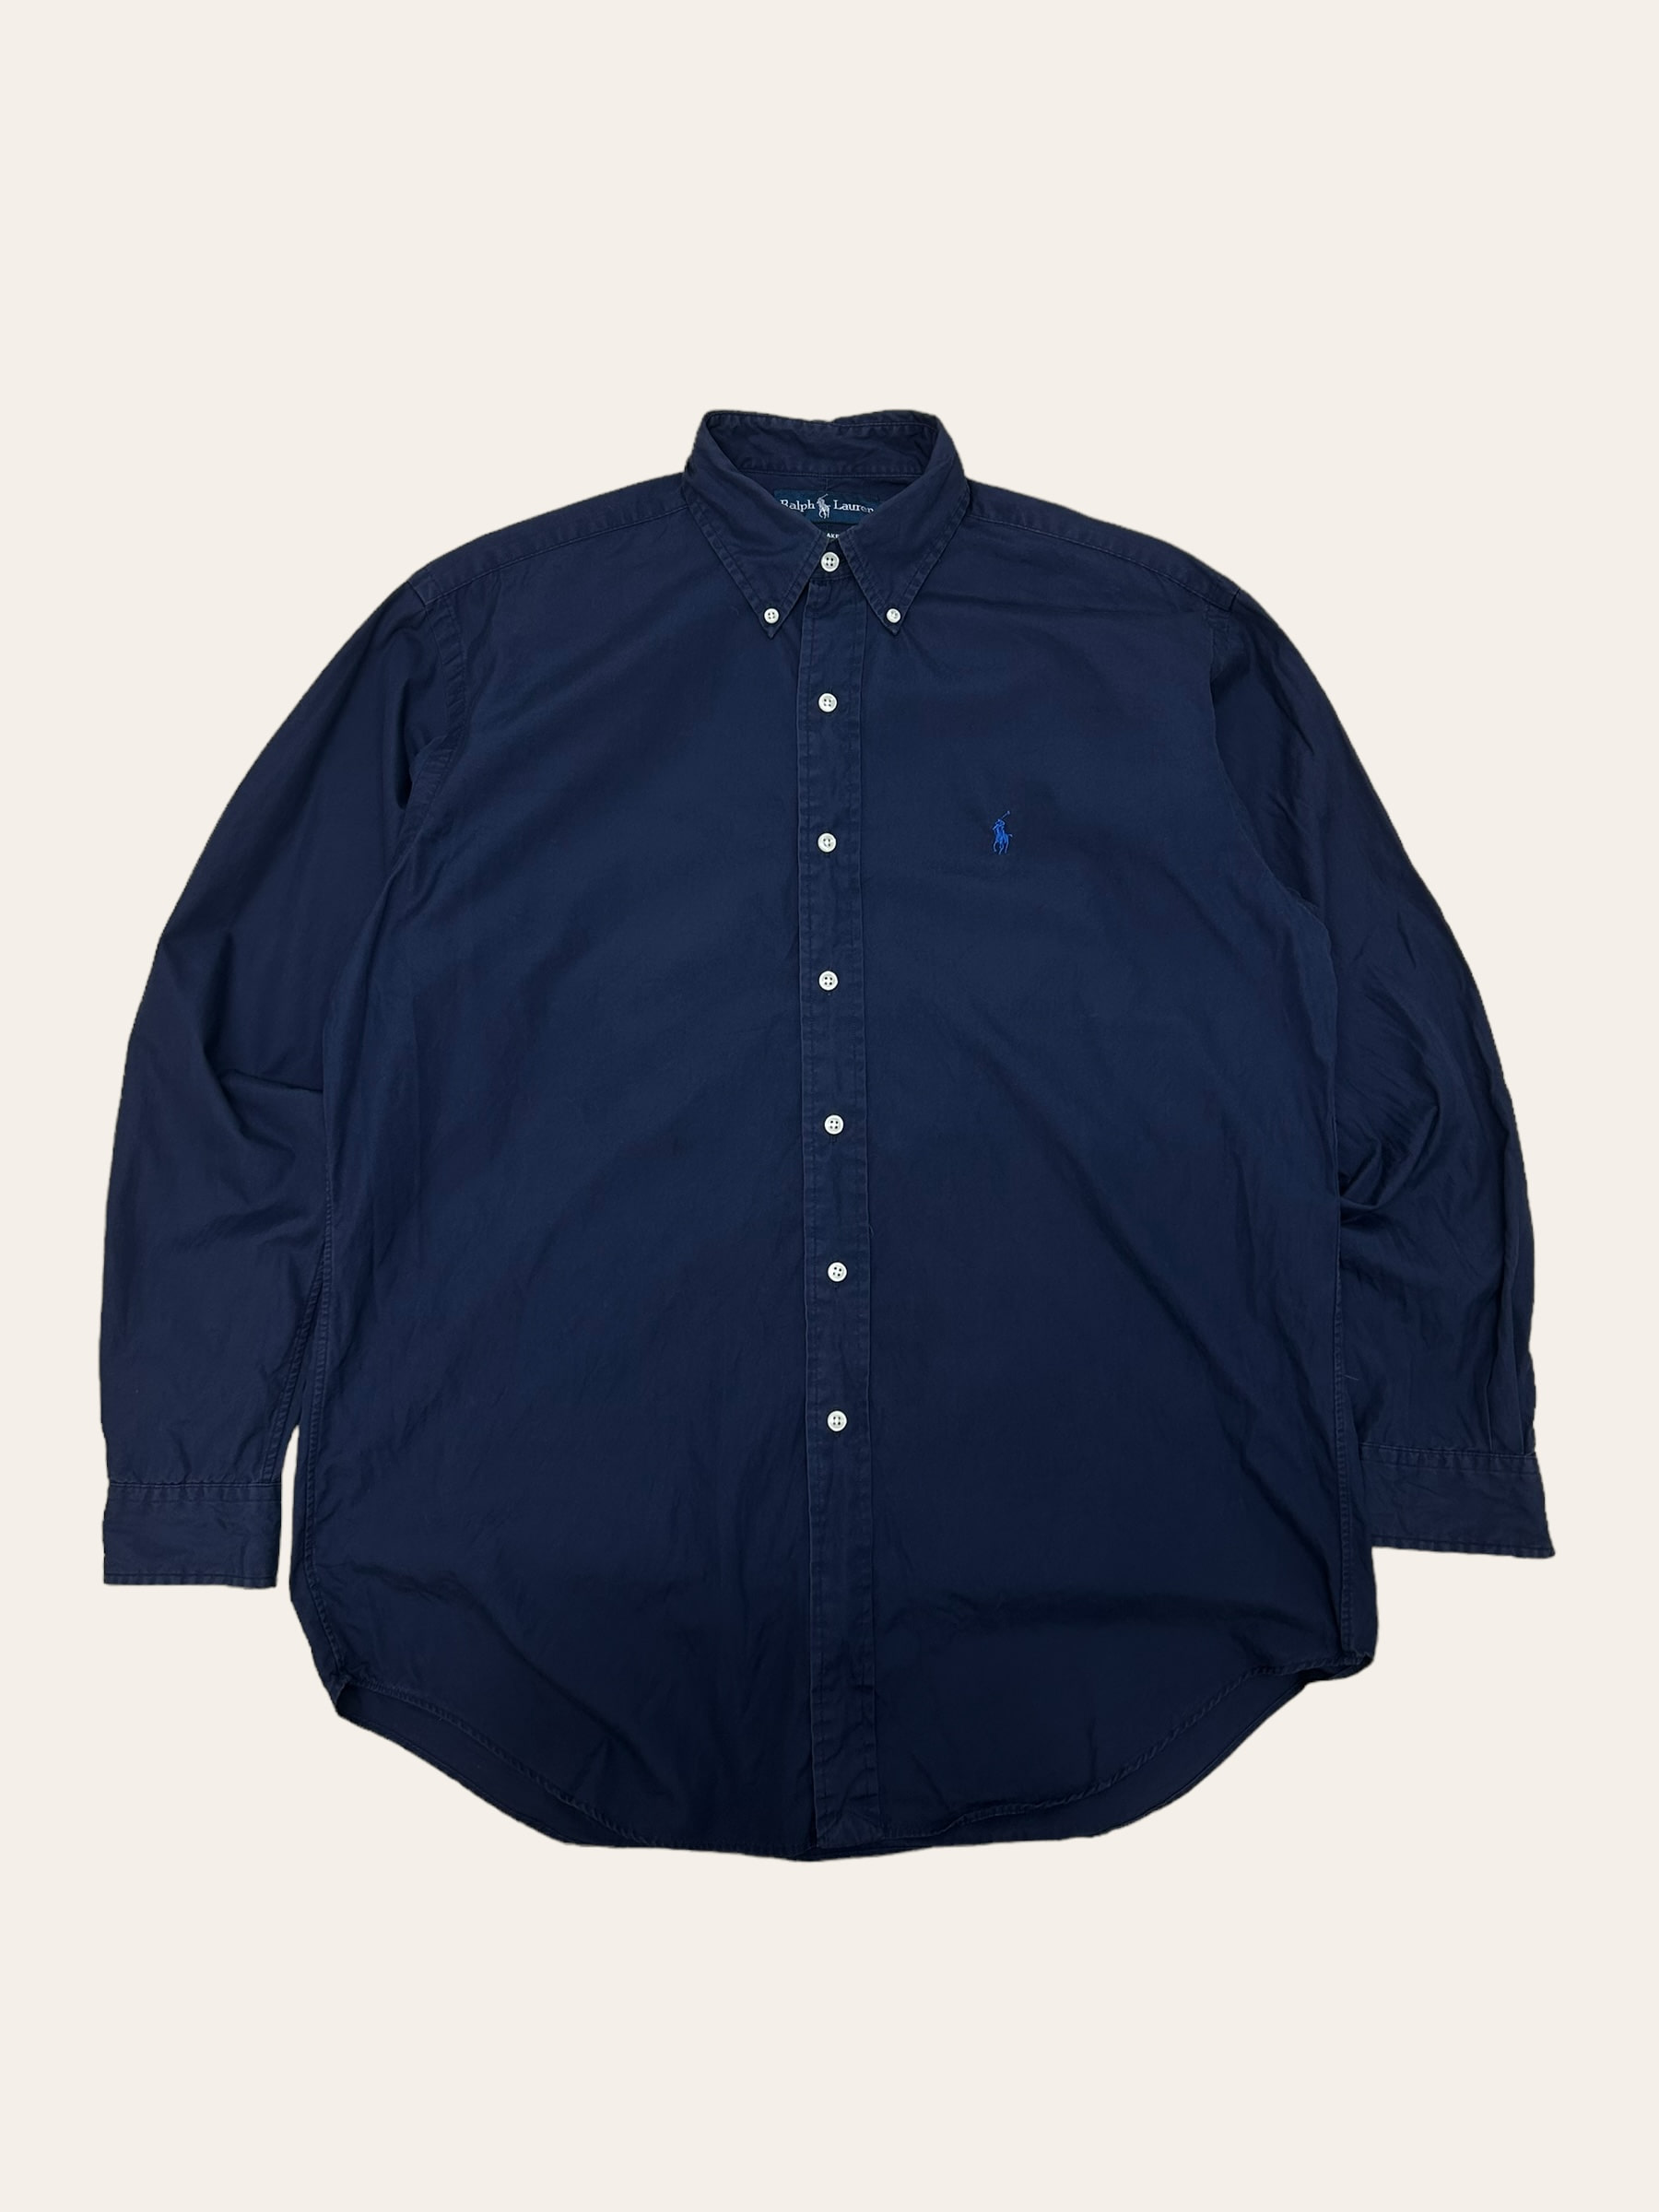 (From USA)Polo ralph lauren navy poplin solid shirt M